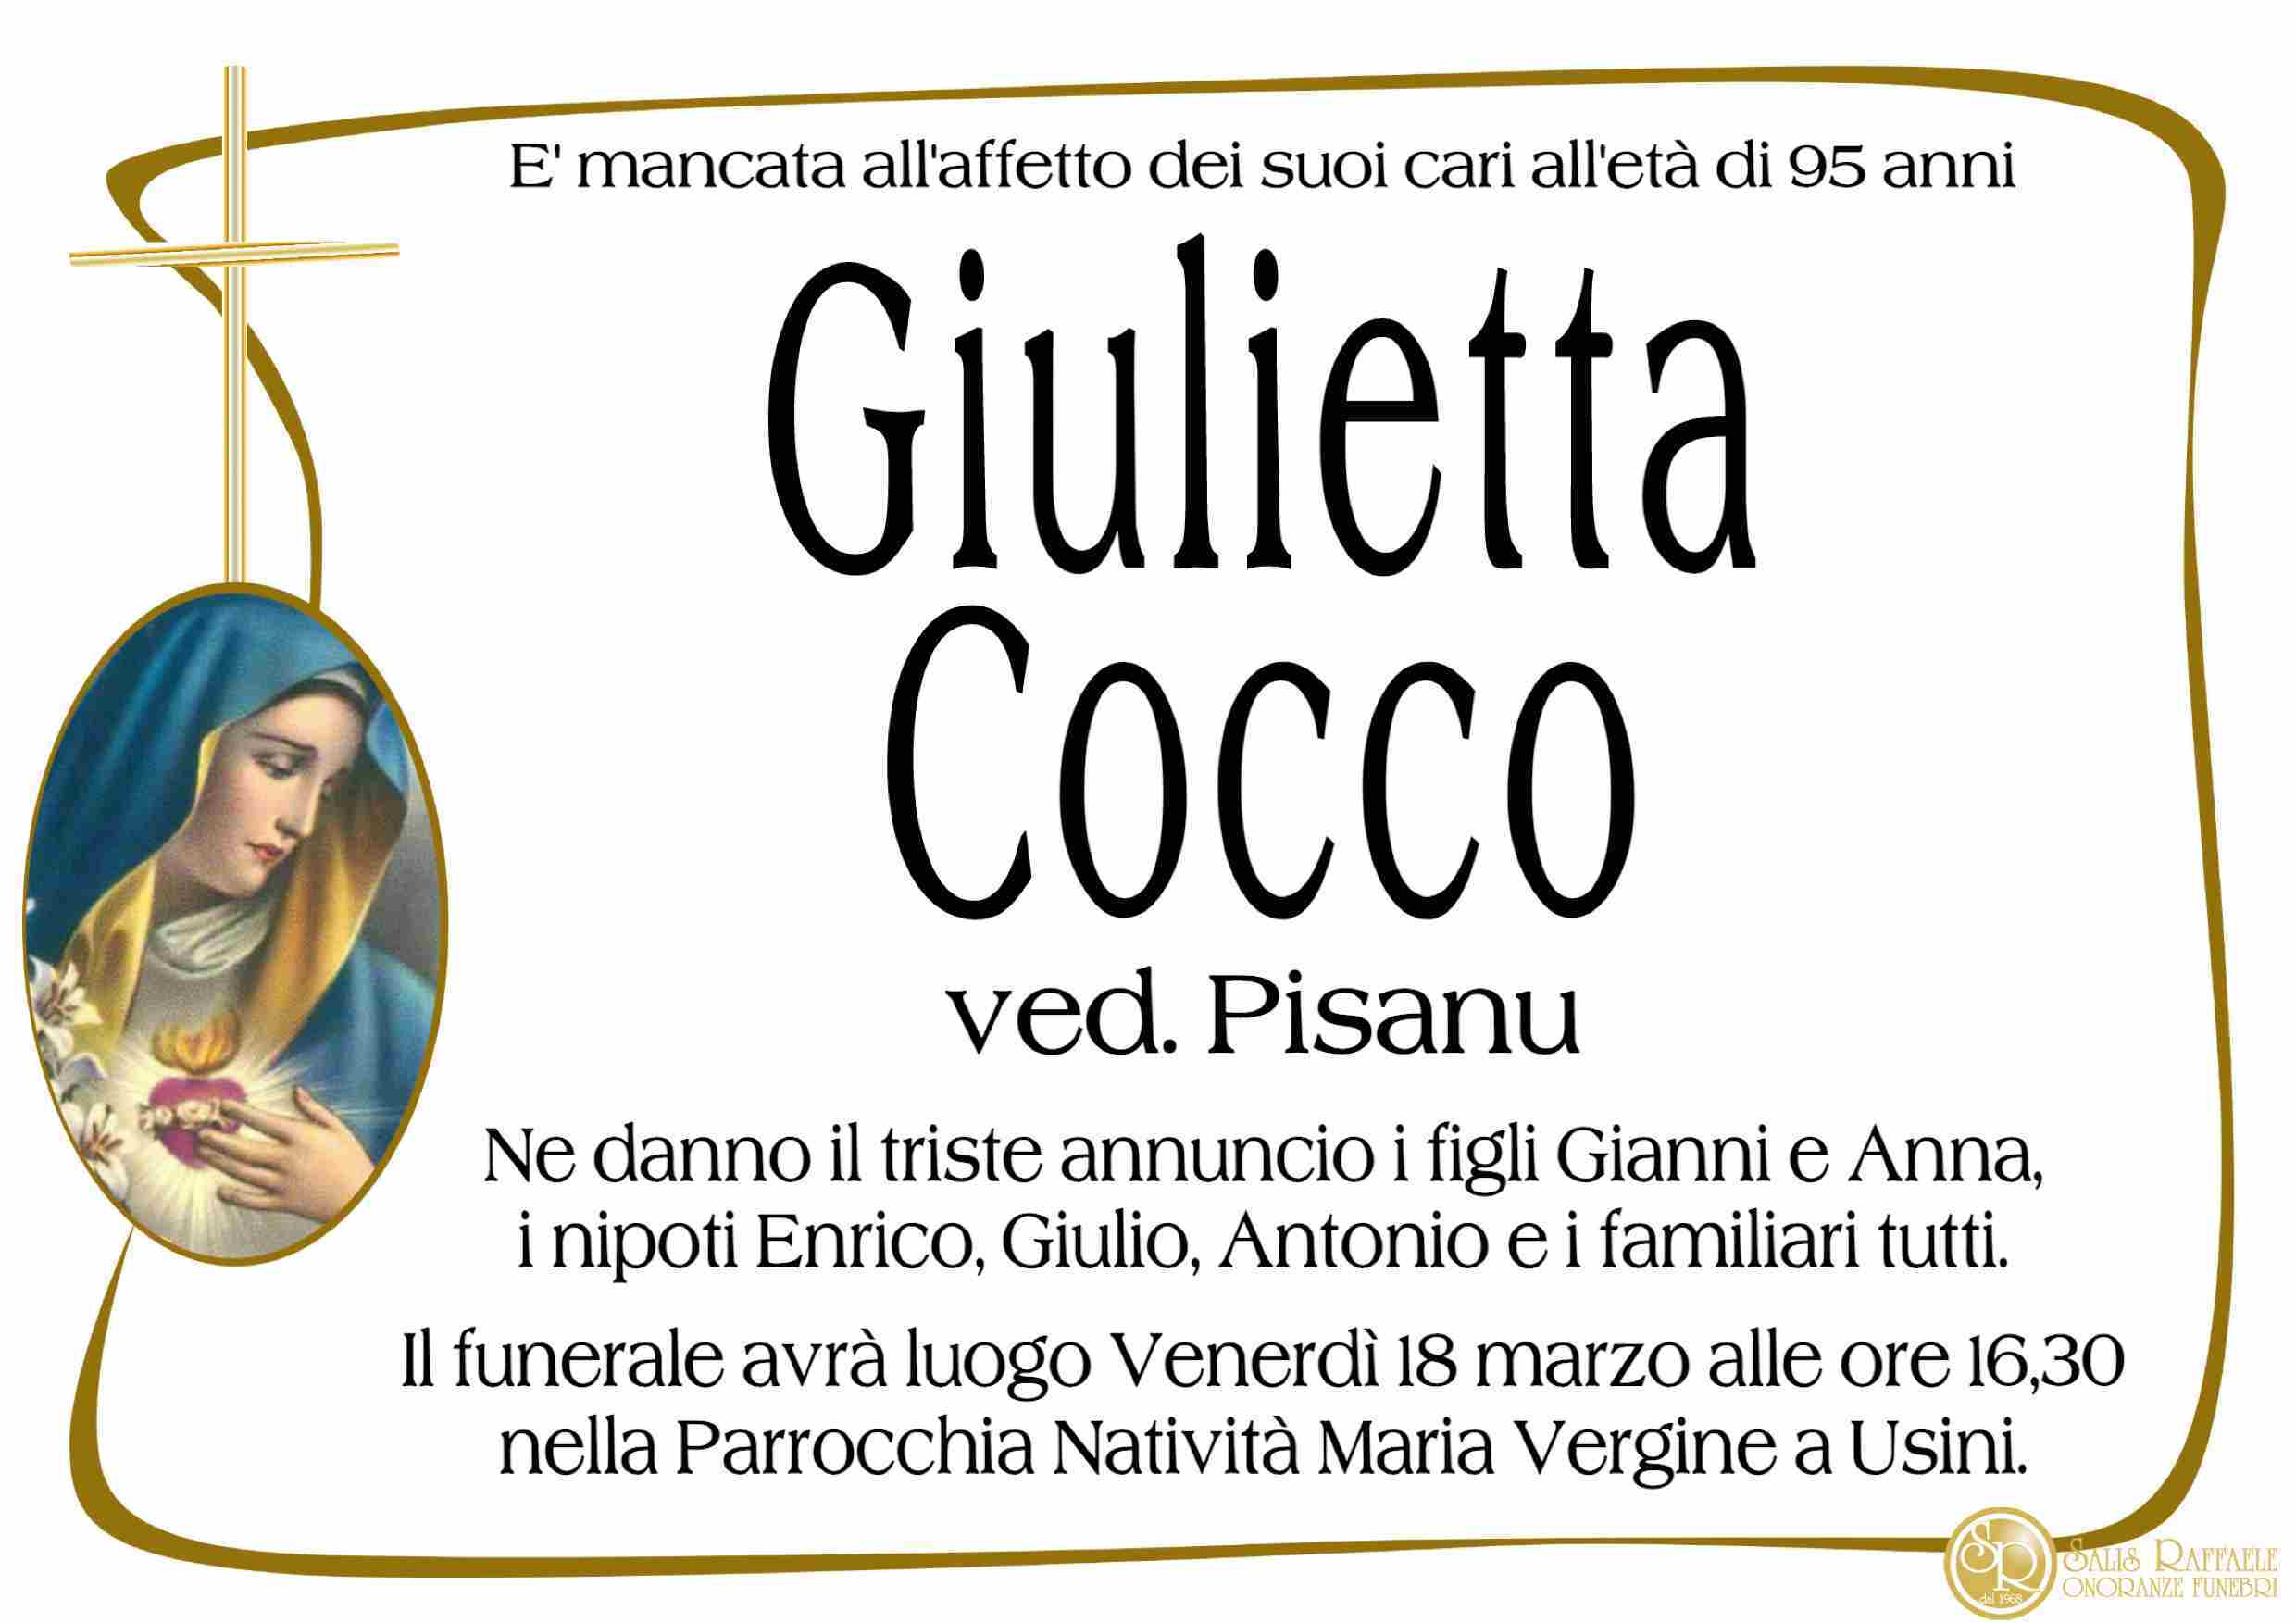 Giulietta Cocco